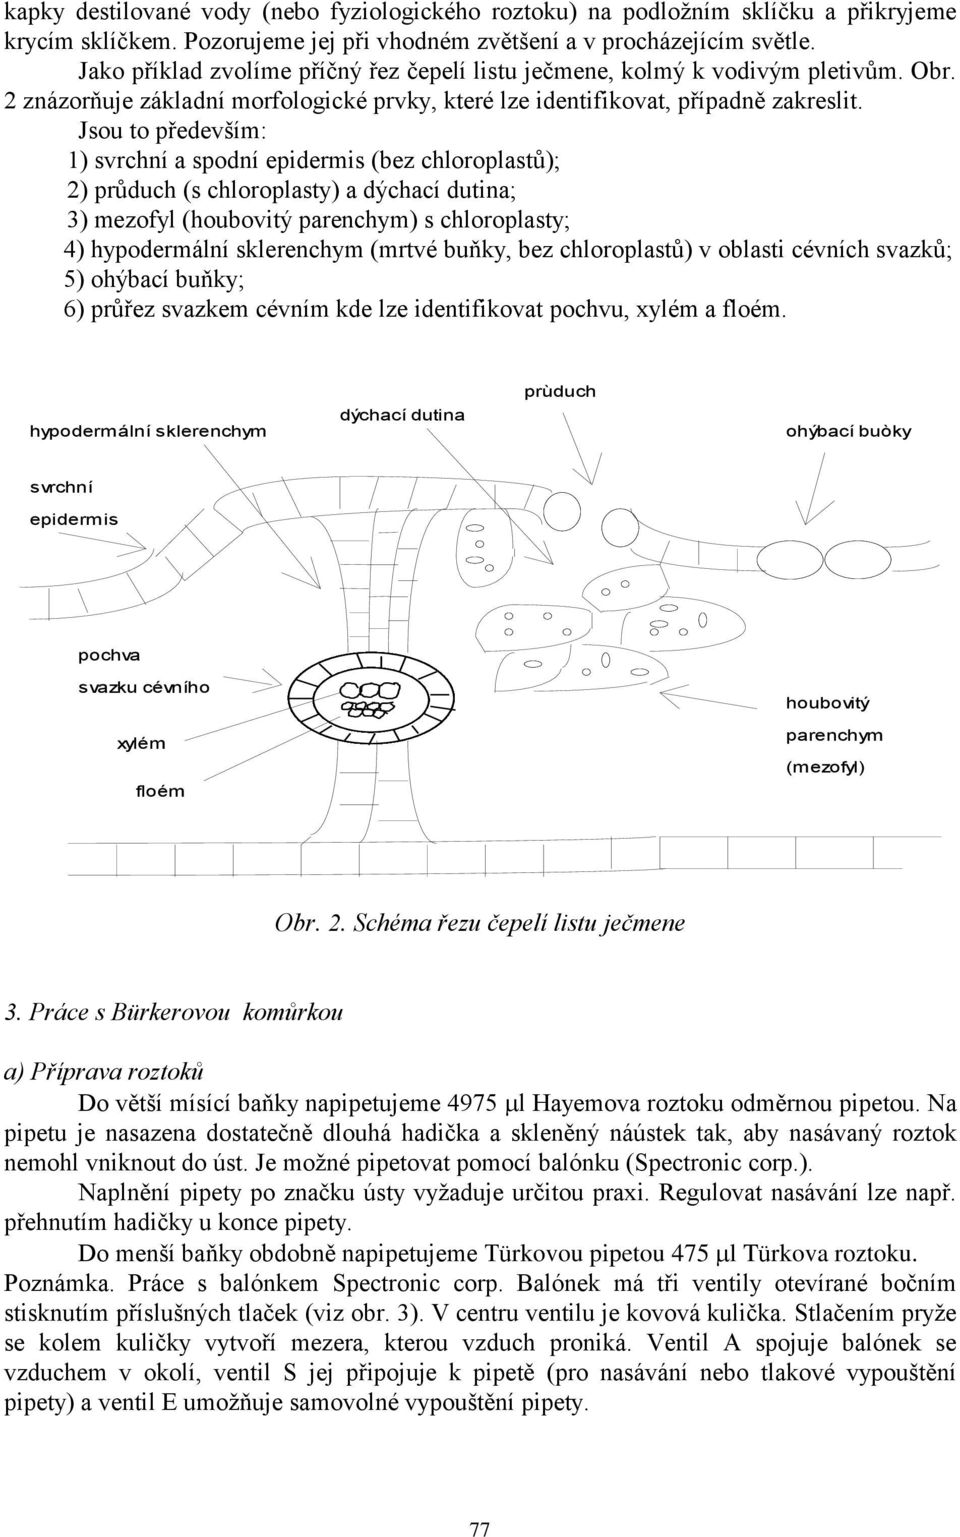 chloroplastů); 2) průduch (s chloroplasty) a dýchací dutina; 3) mezofyl (houbovitý parenchym) s chloroplasty; 4) hypodermální sklerenchym (mrtvé buňky, bez chloroplastů) v oblasti cévních svazků; 5)